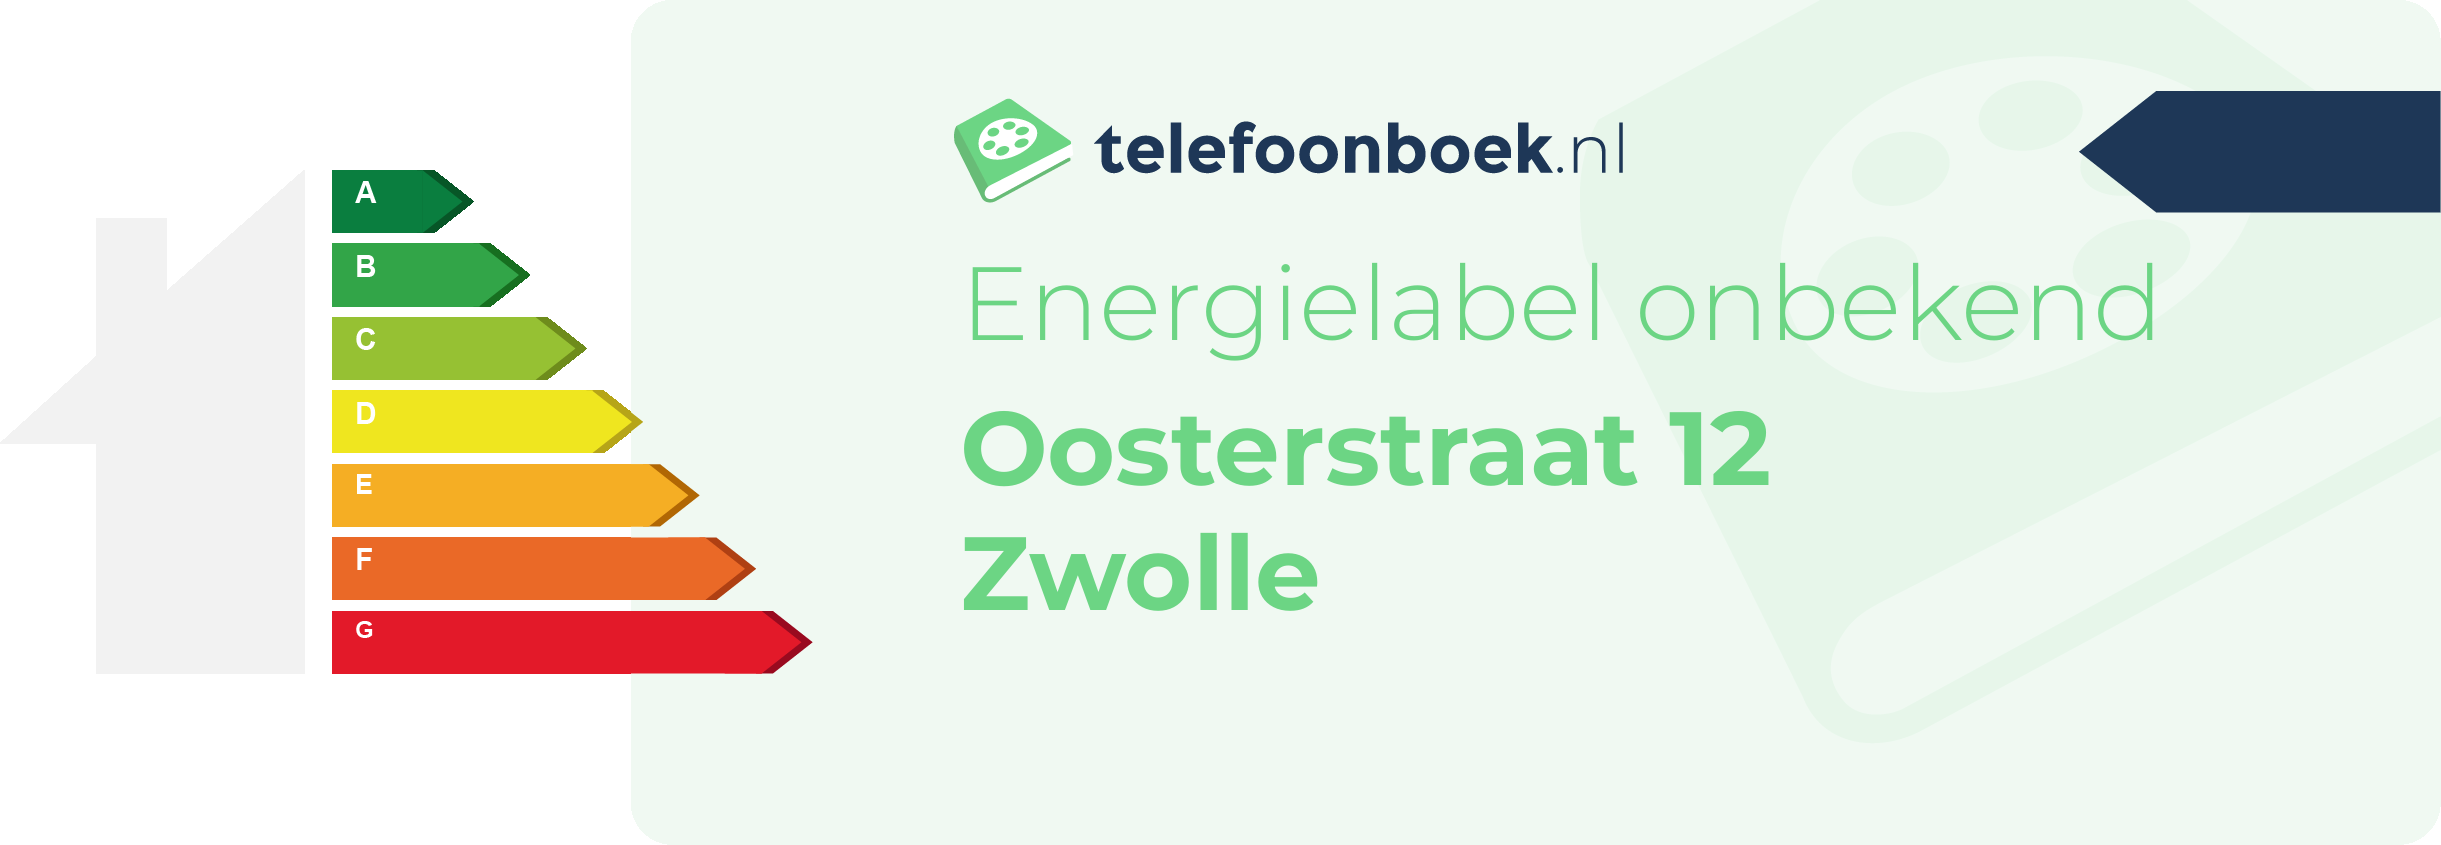 Energielabel Oosterstraat 12 Zwolle